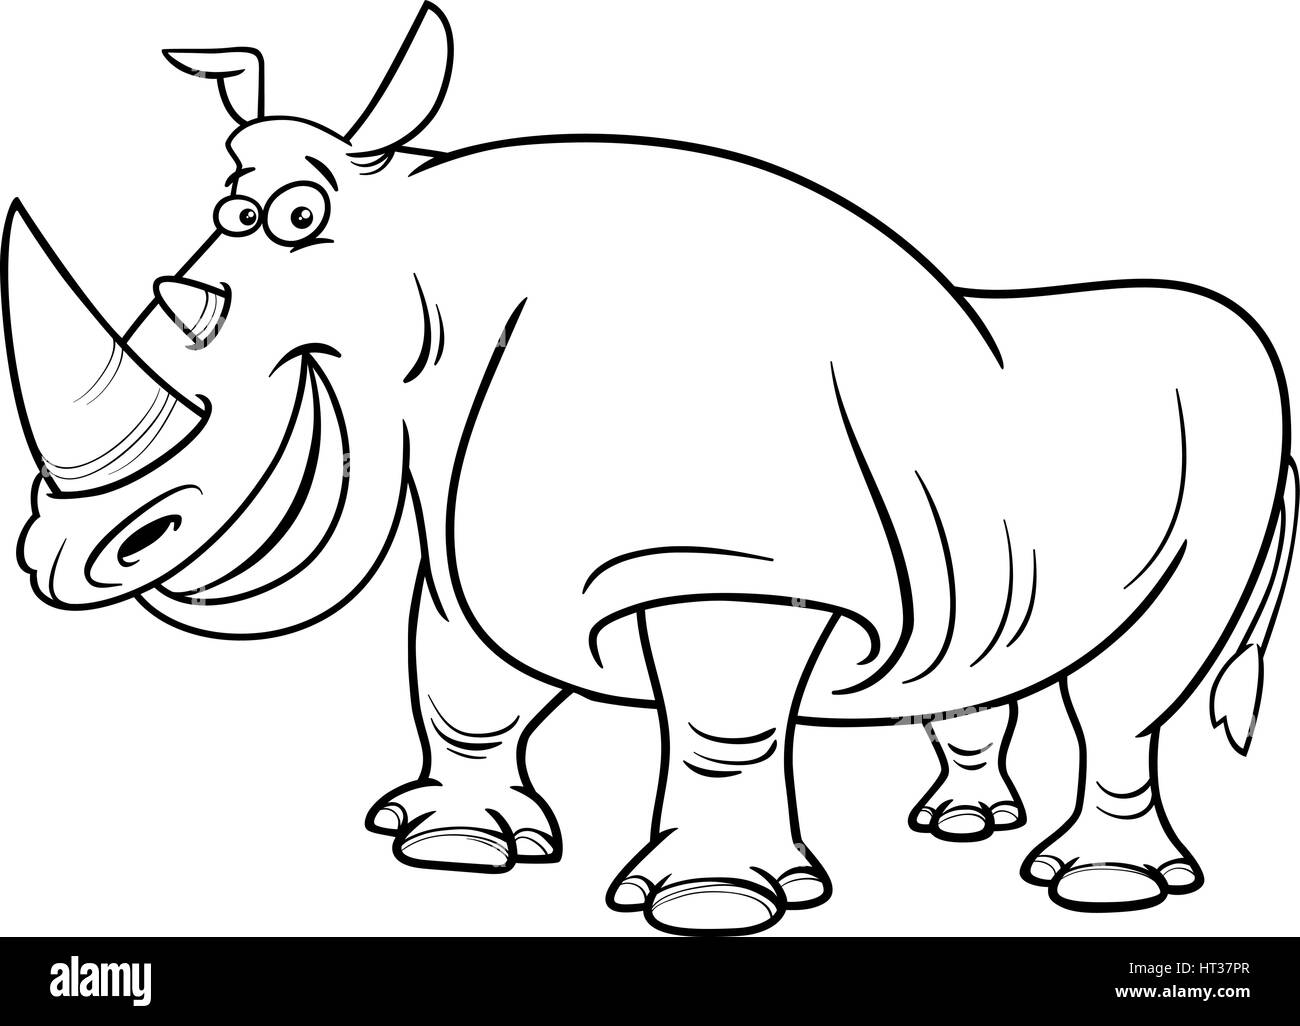 Bianco e Nero Cartoon illustrazione di rinoceronte animali selvatici del carattere nella pagina di colorazione Illustrazione Vettoriale